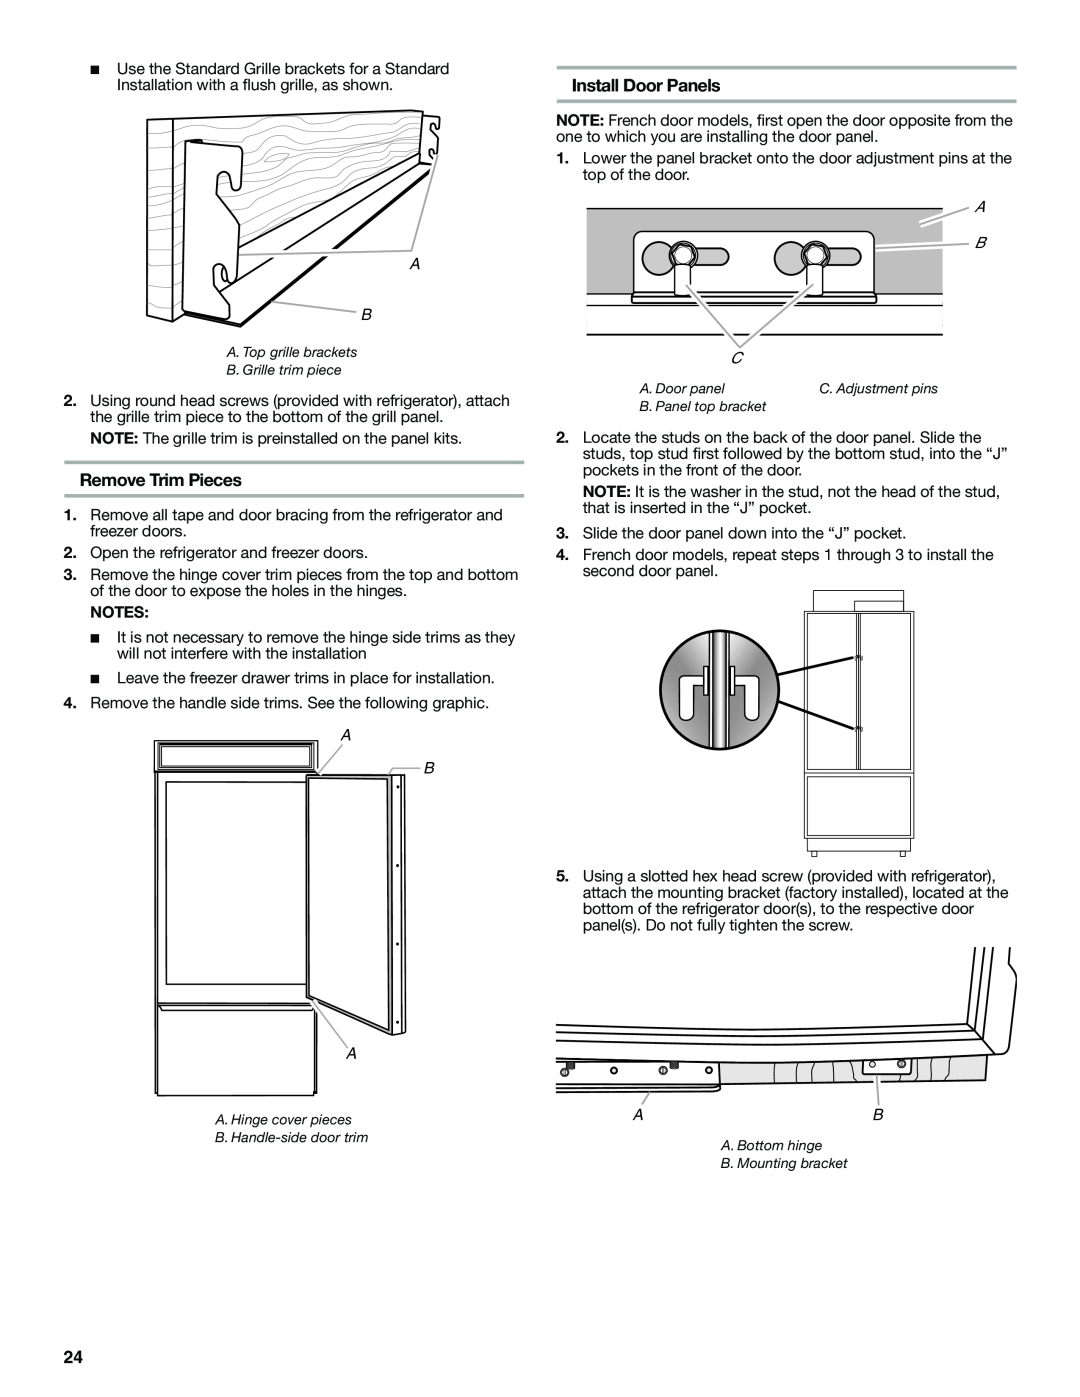 Jenn-Air W10379137A manual Remove Trim Pieces, Install Door Panels, A B A 